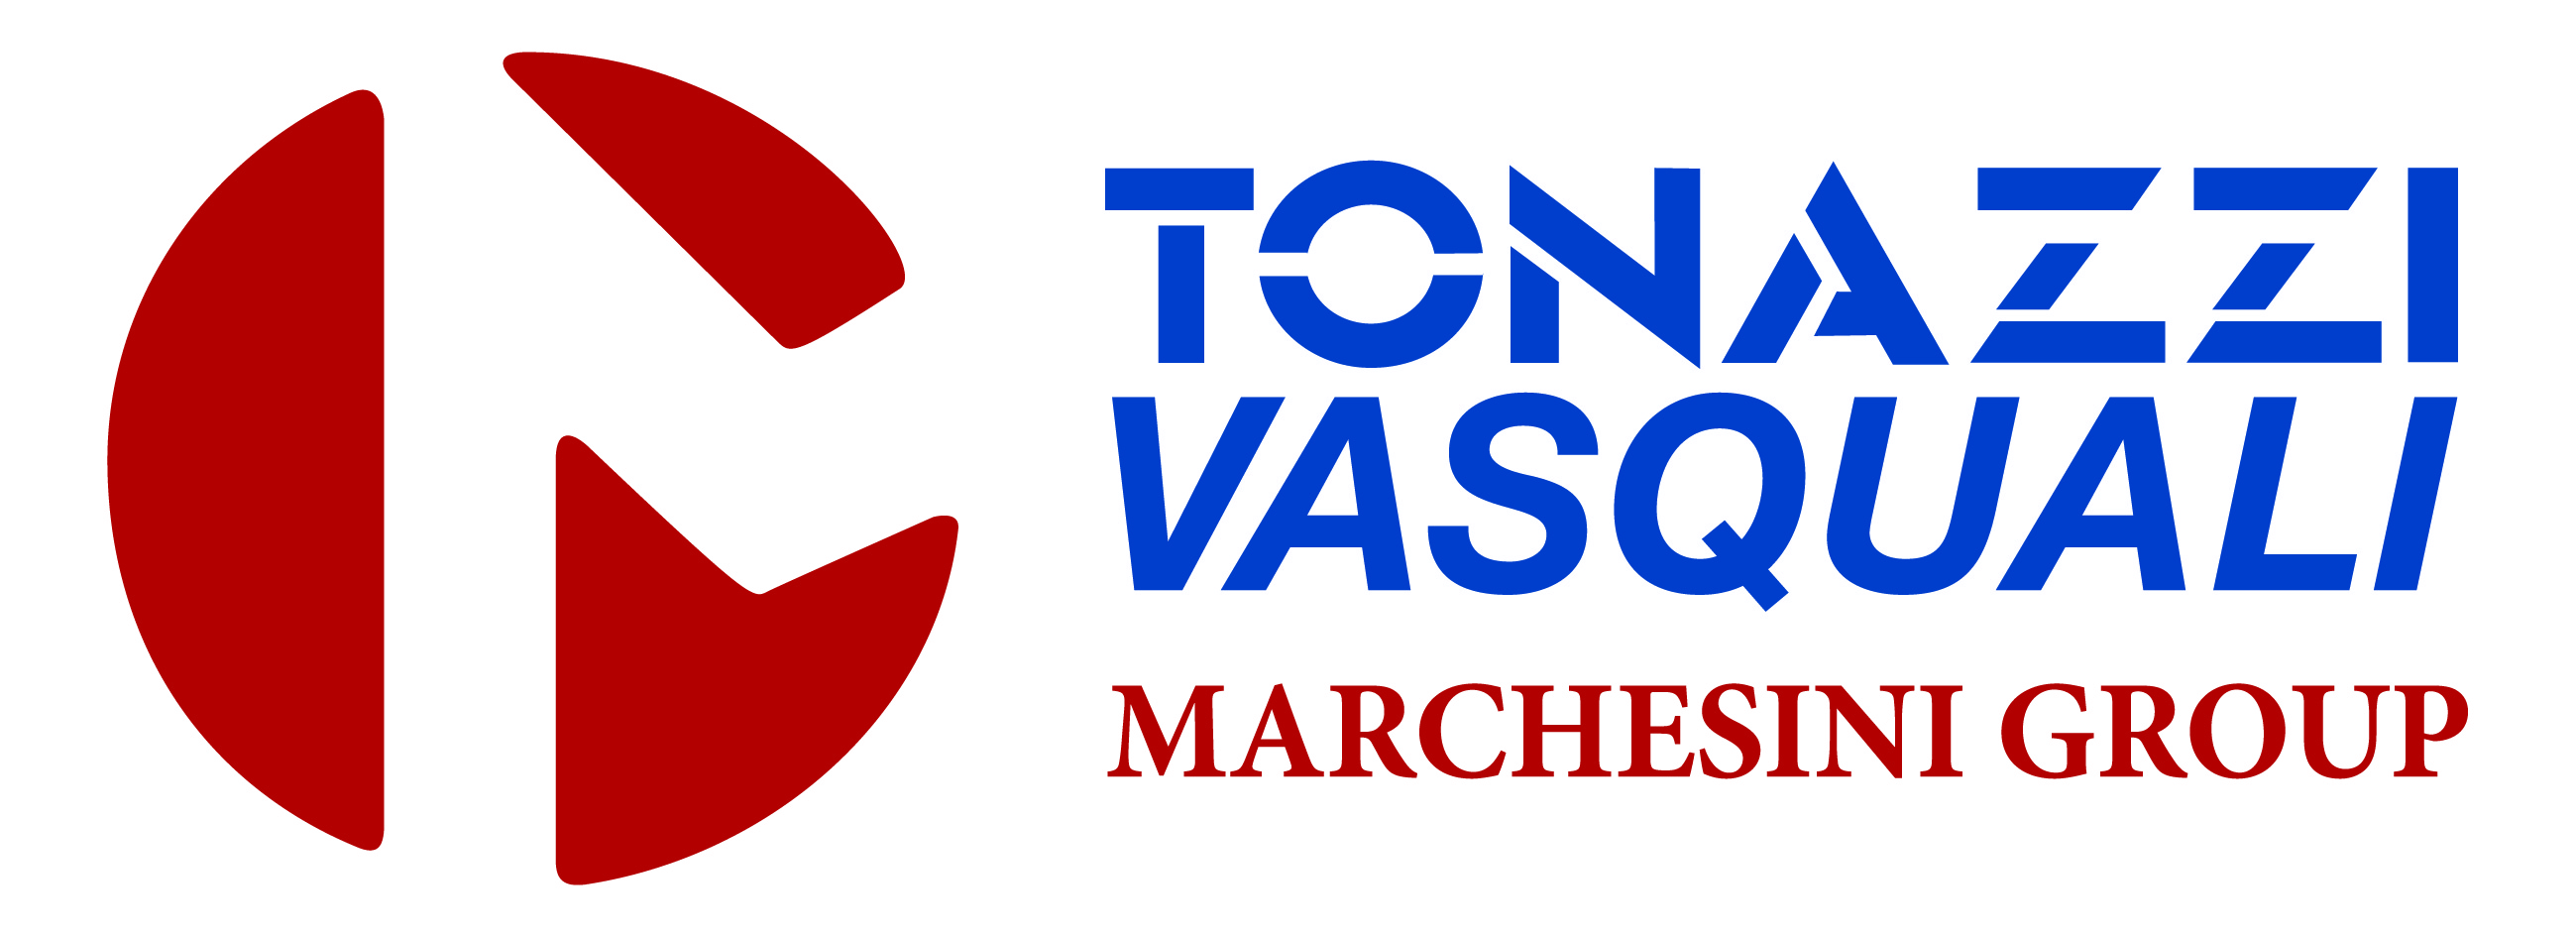 Tonazzi-Vasquali